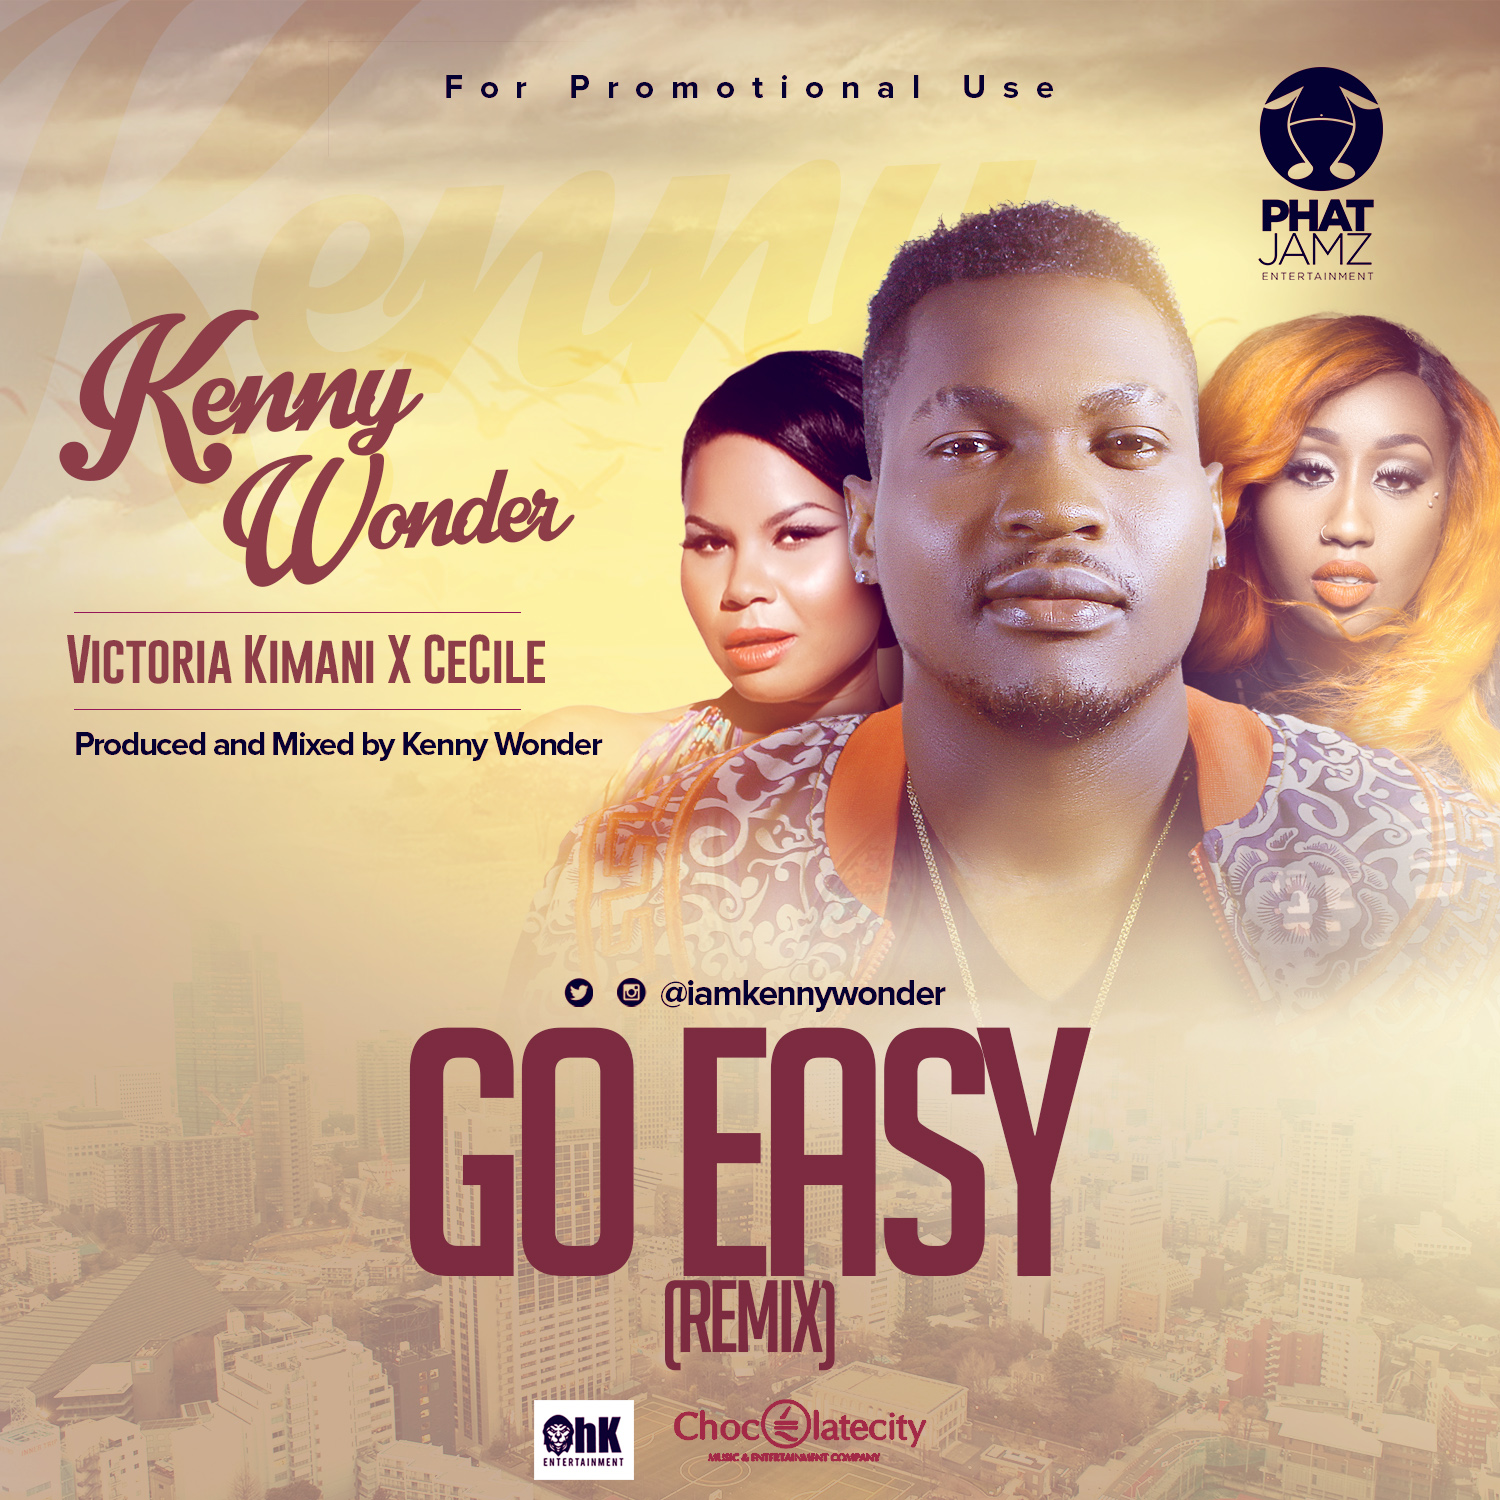 kenny Go easy Remix